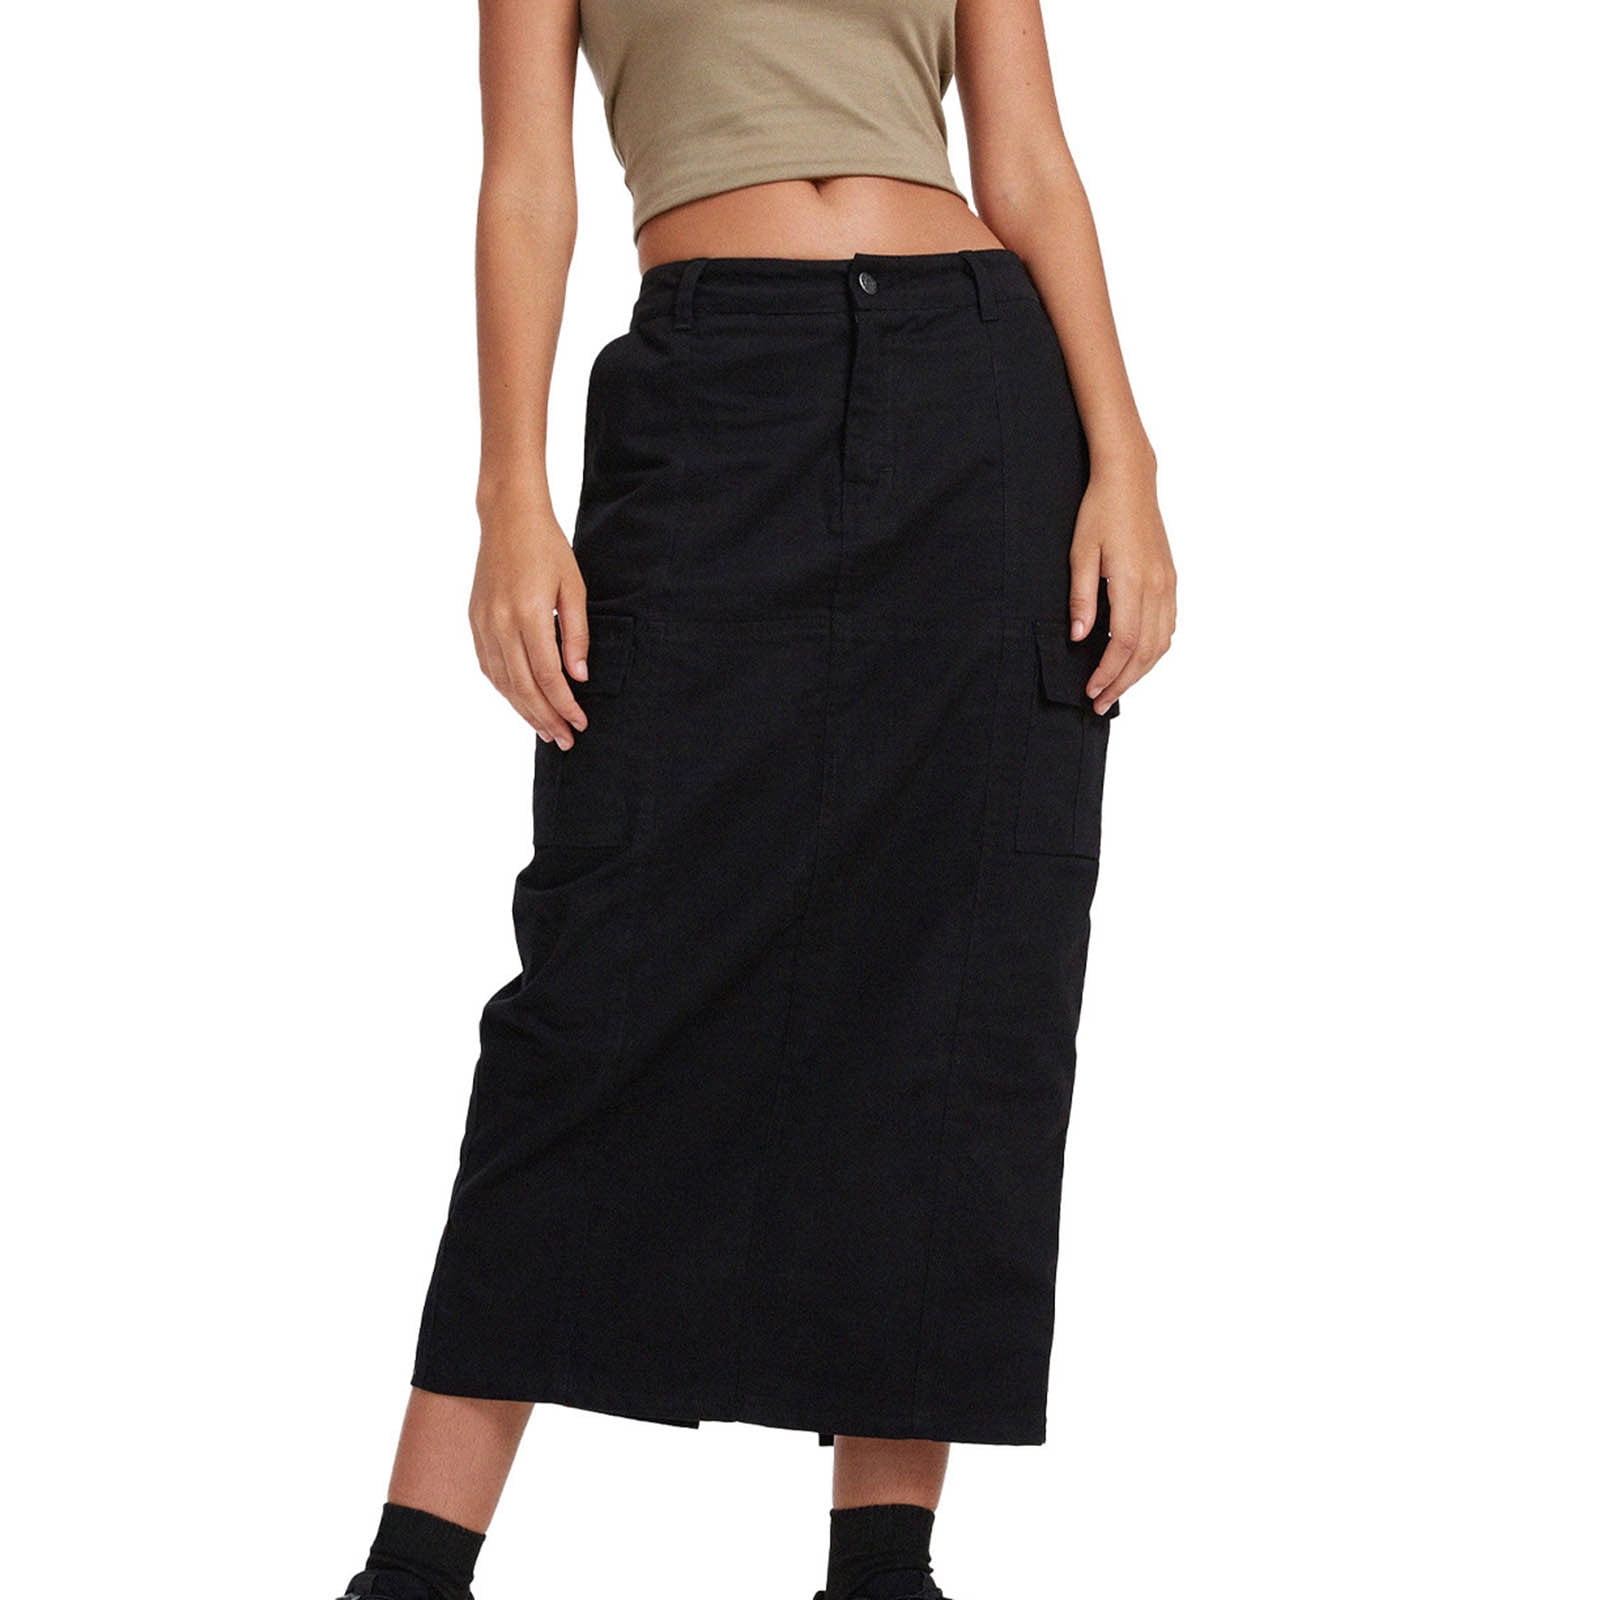 JNGSA Women's Comfy Stretch Denim Skirt High Waist Solid Color Skirt ...